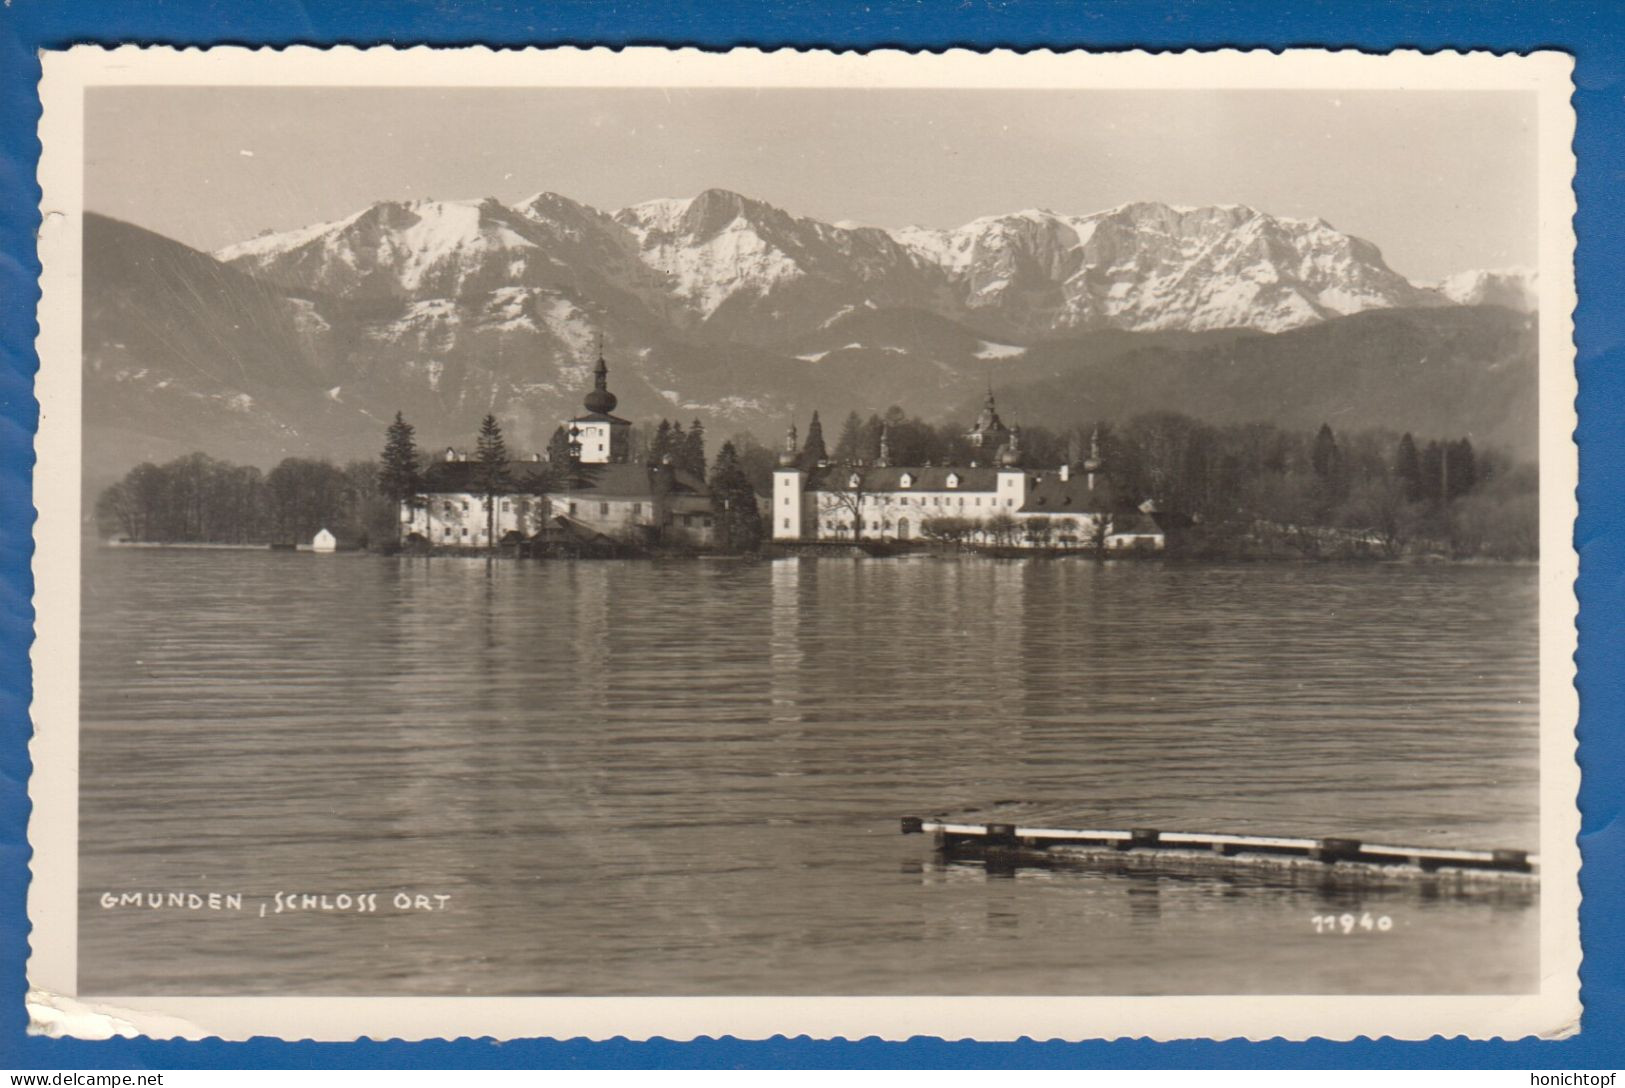 Österreich; Gmunden; Schloss Ort; Salzkammergut; 1956 - Gmunden